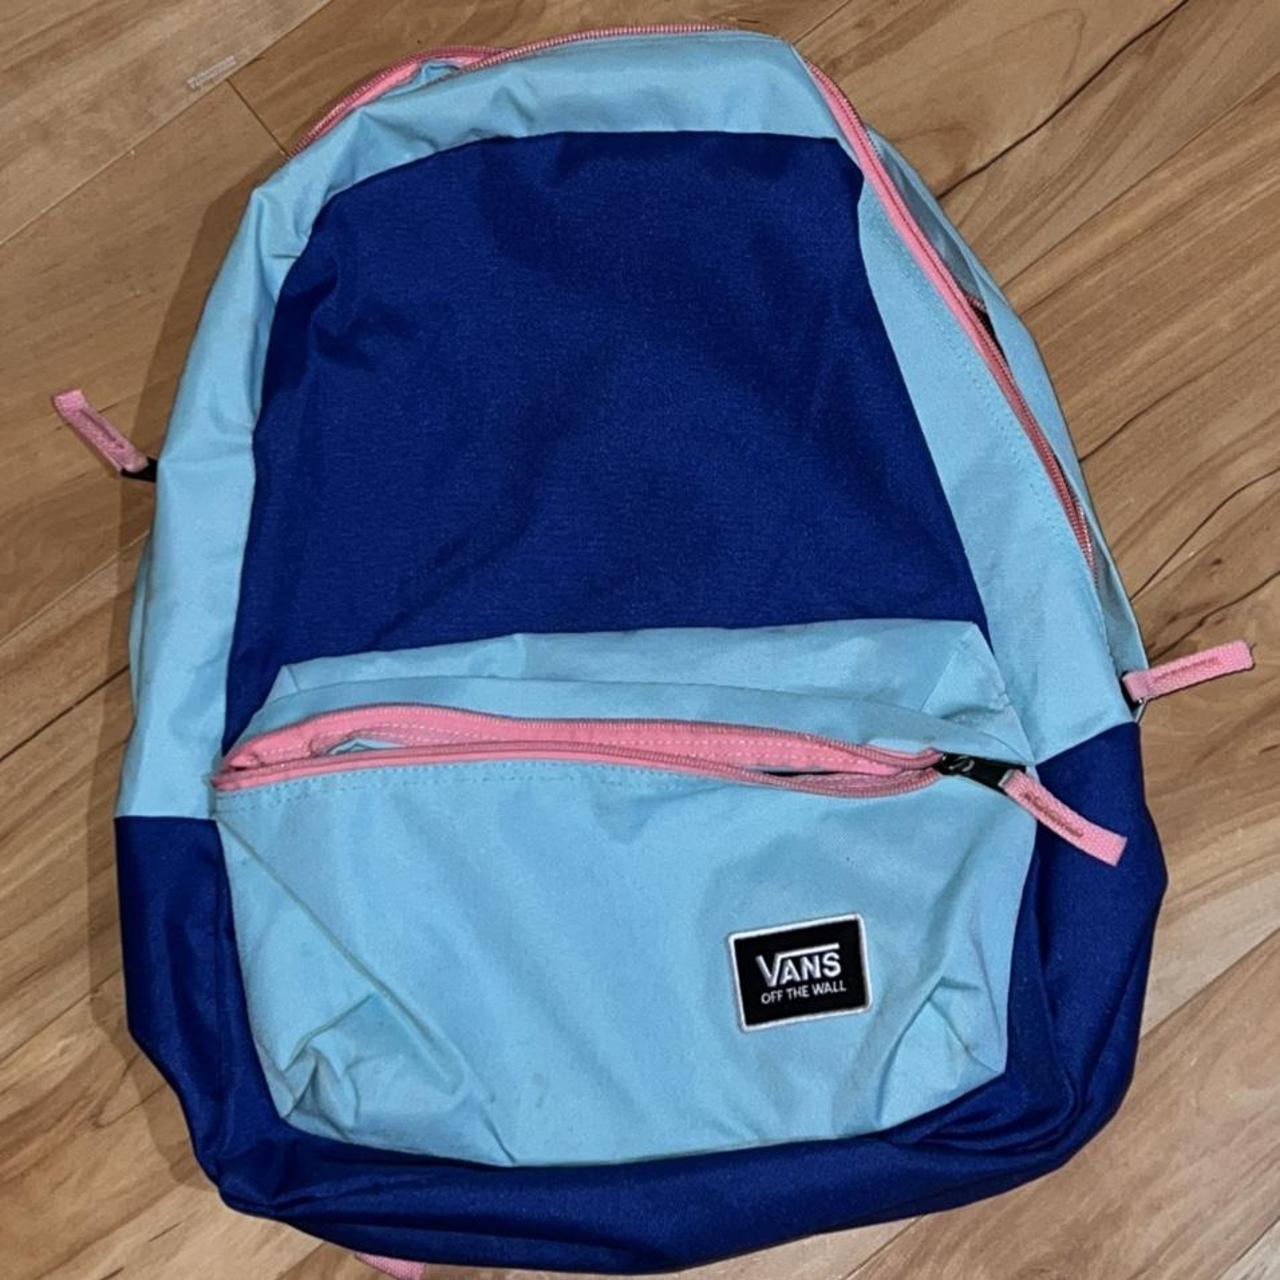 Blue and pink VANS backpack 💙🛹📚 Lightly worn Big... - Depop